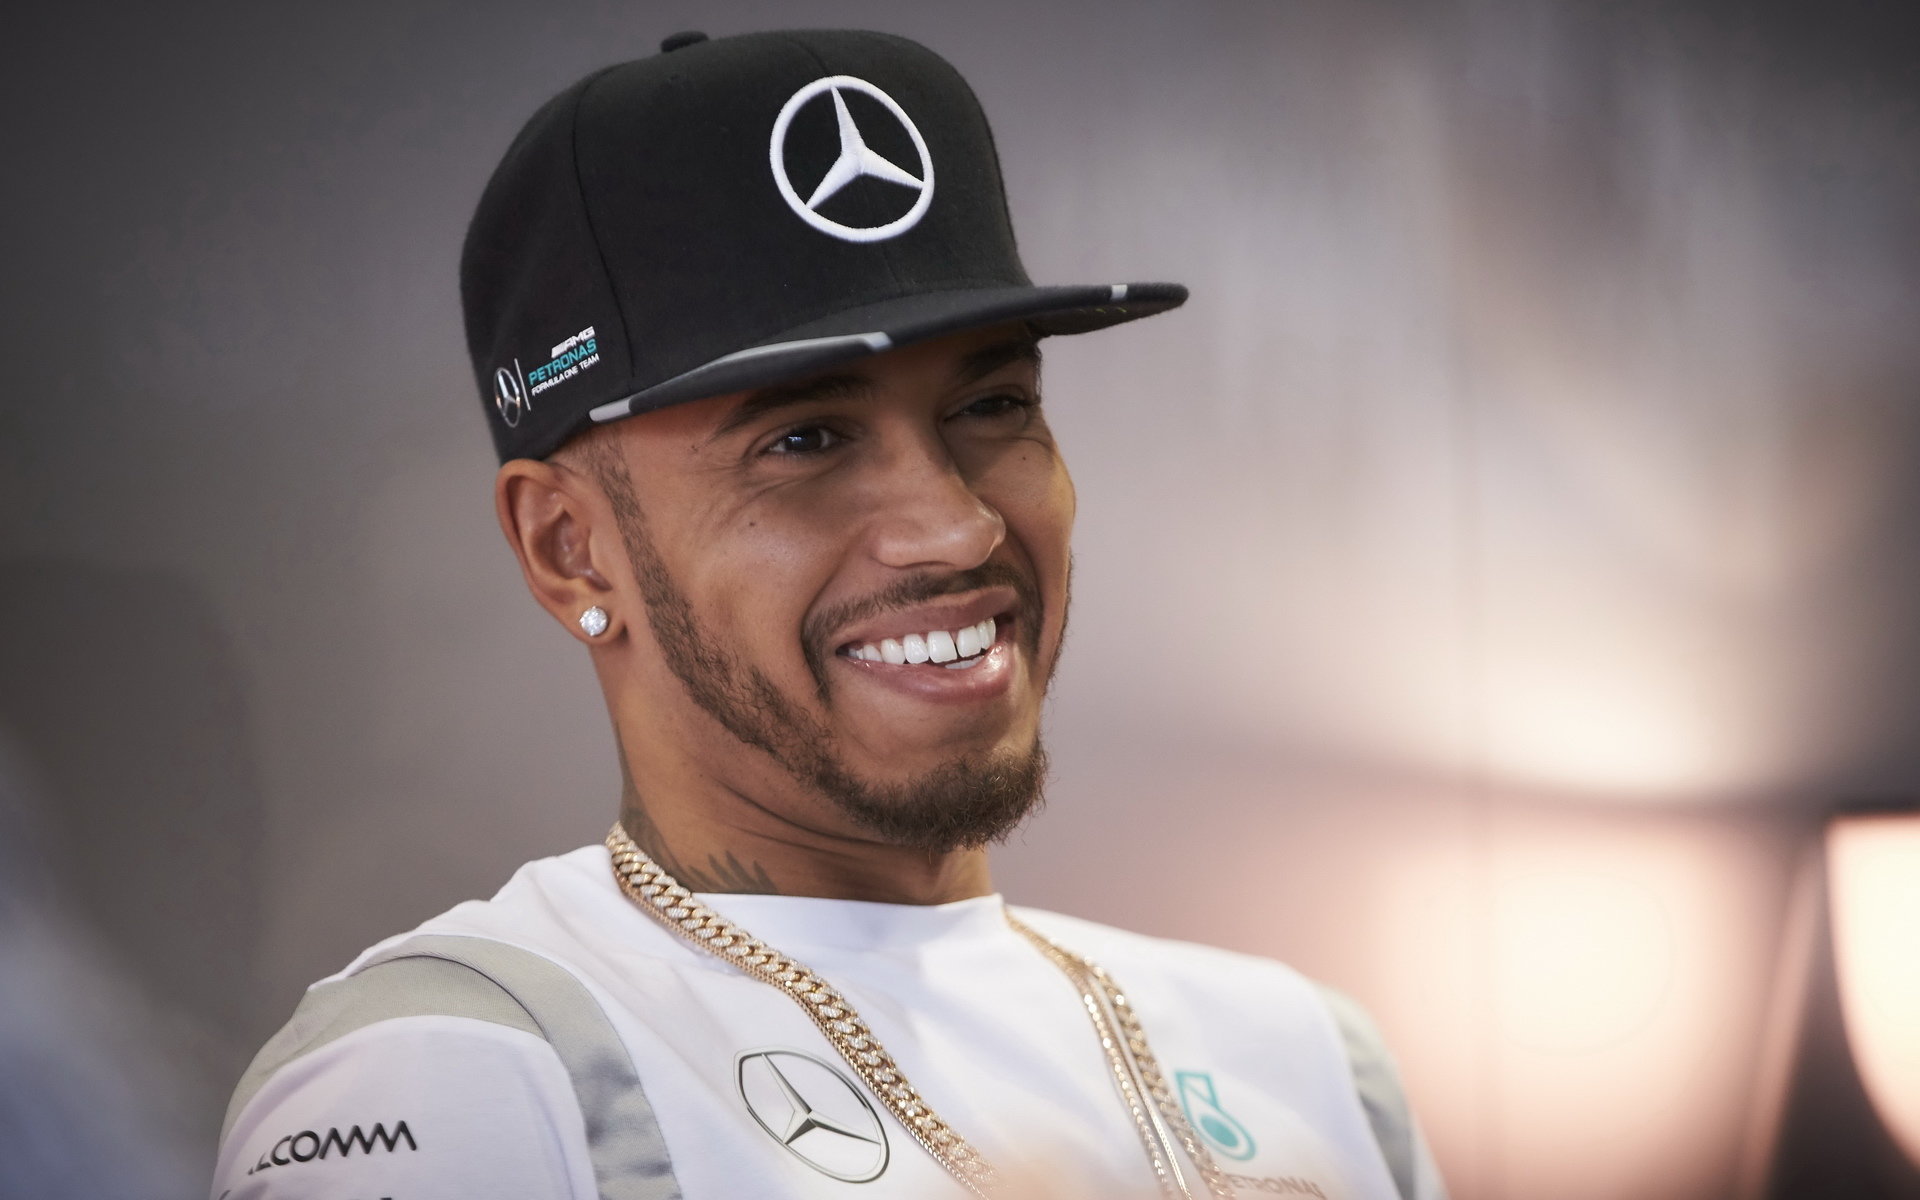 Lewis Hamilton v Soči